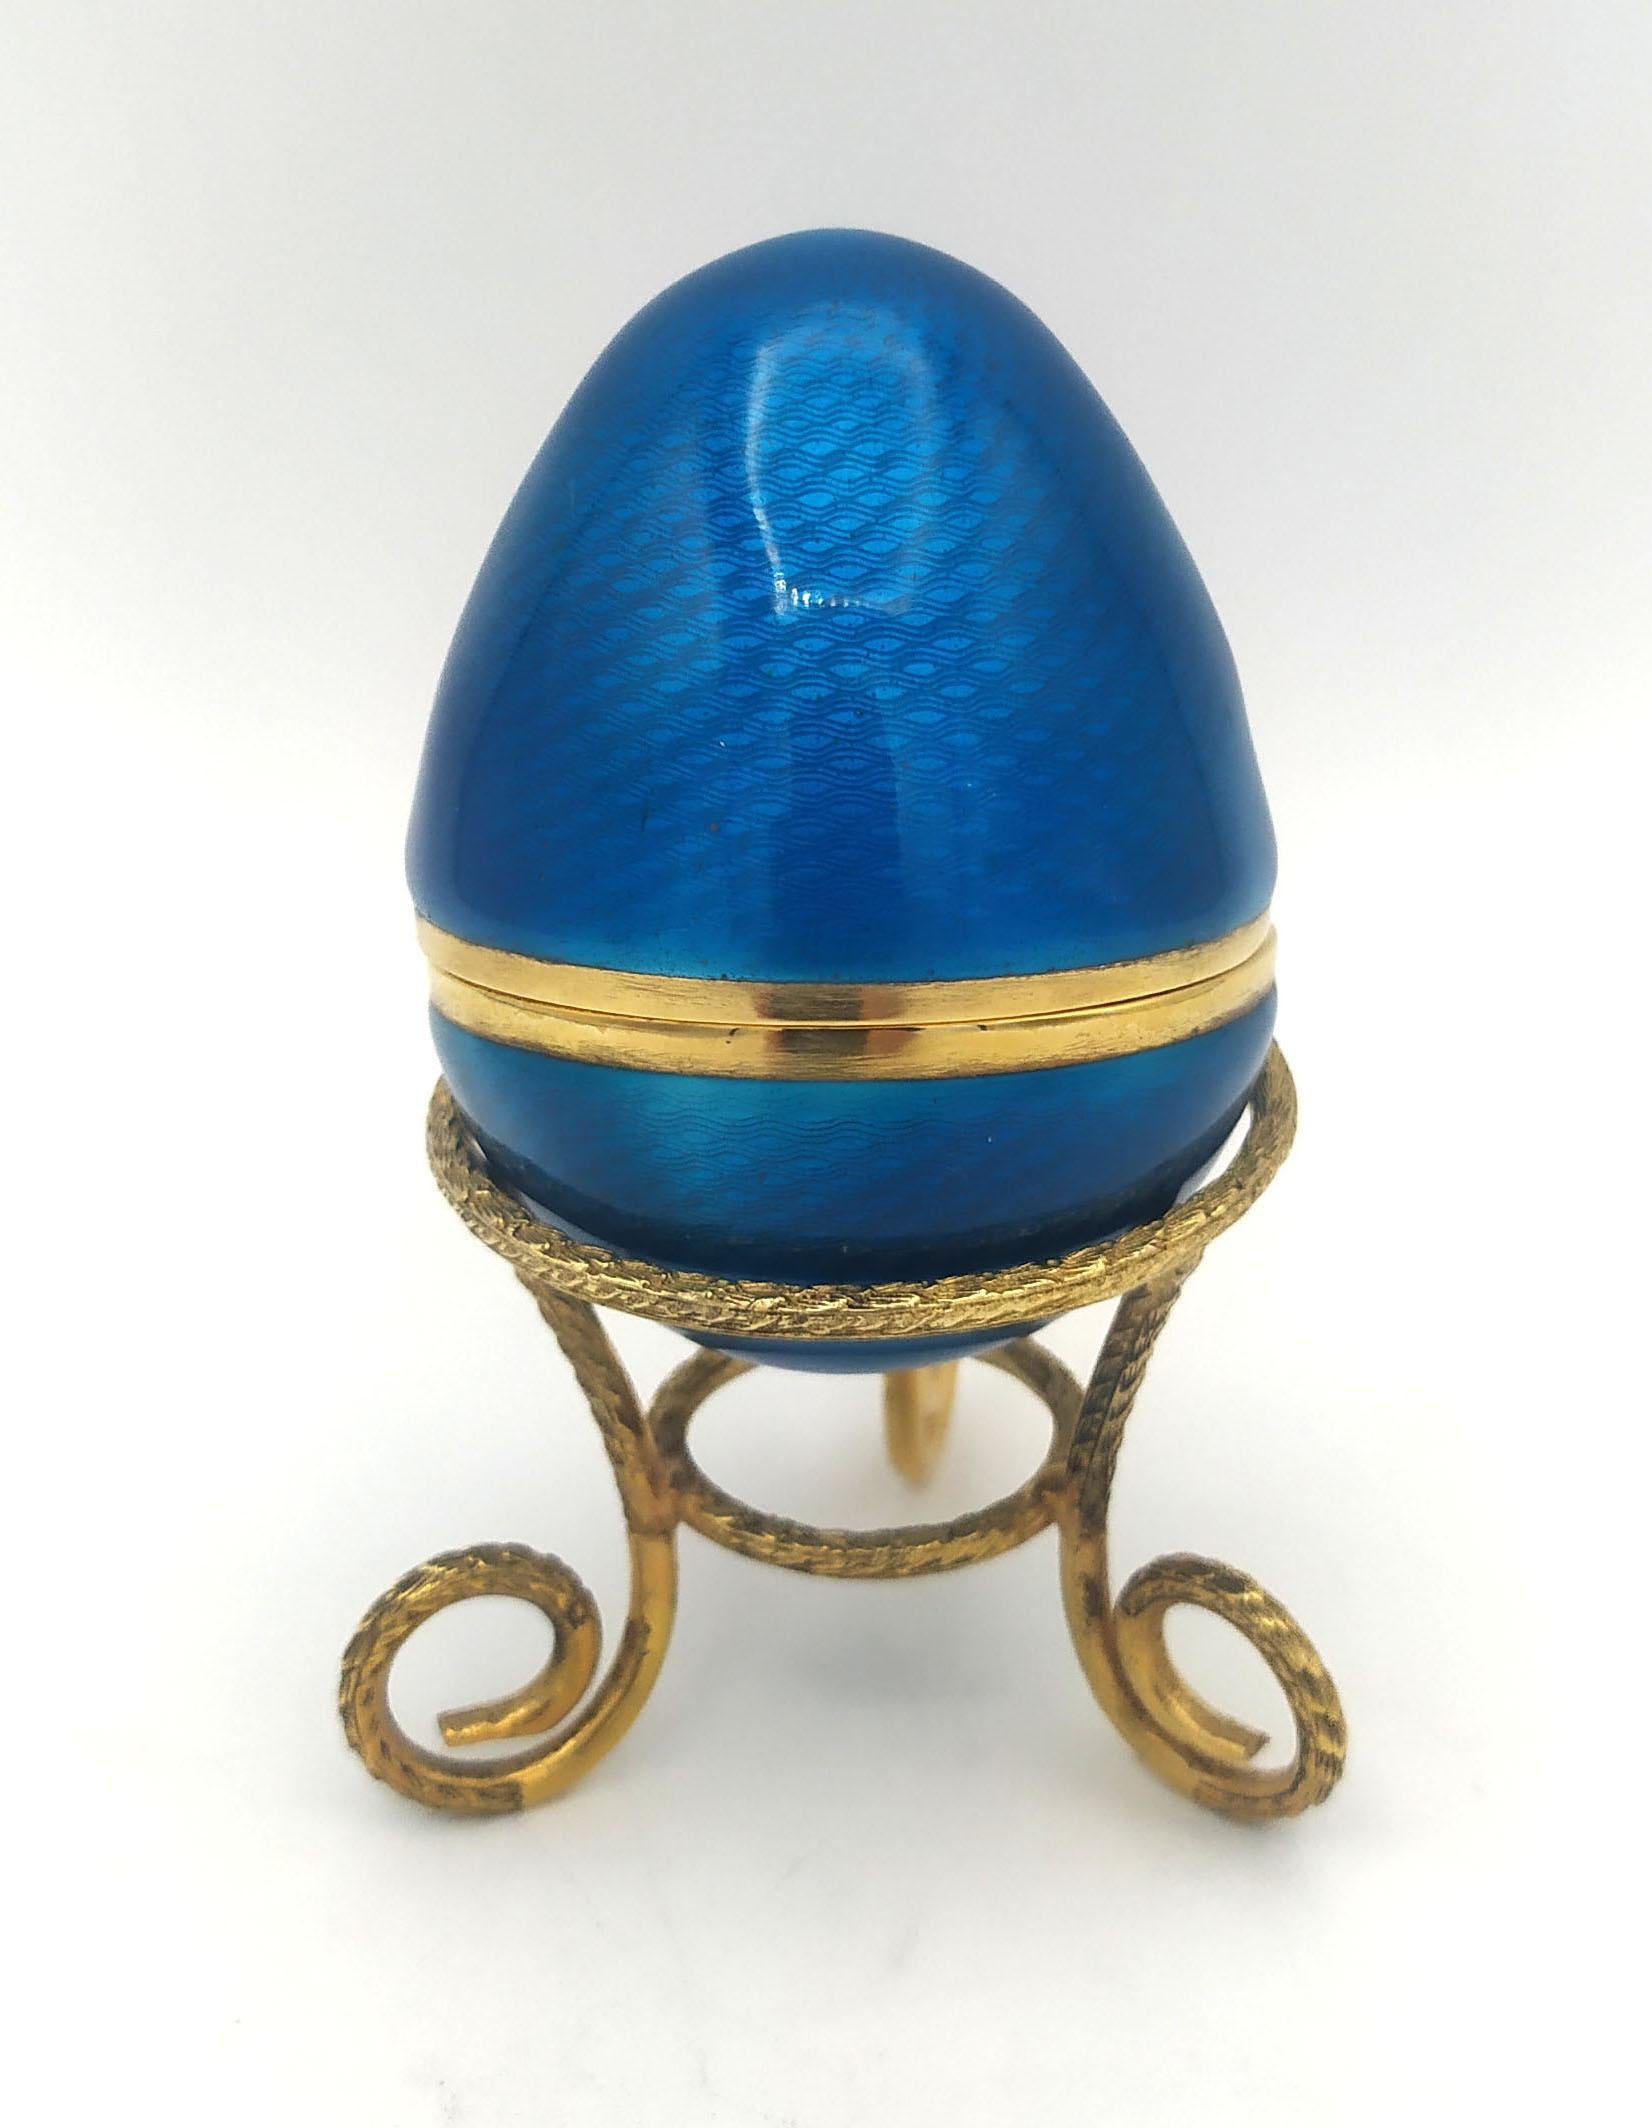 
L'émail bleu marine de l'œuf est en argent 925/1000.
L'émail bleu marine de l'œuf a des émaux cuits sur guilloché a des émaux cuits sur guilloché et un design gravé à la main.
L'émail bleu marine de l'œuf est de style Empire russe et s'inspire des